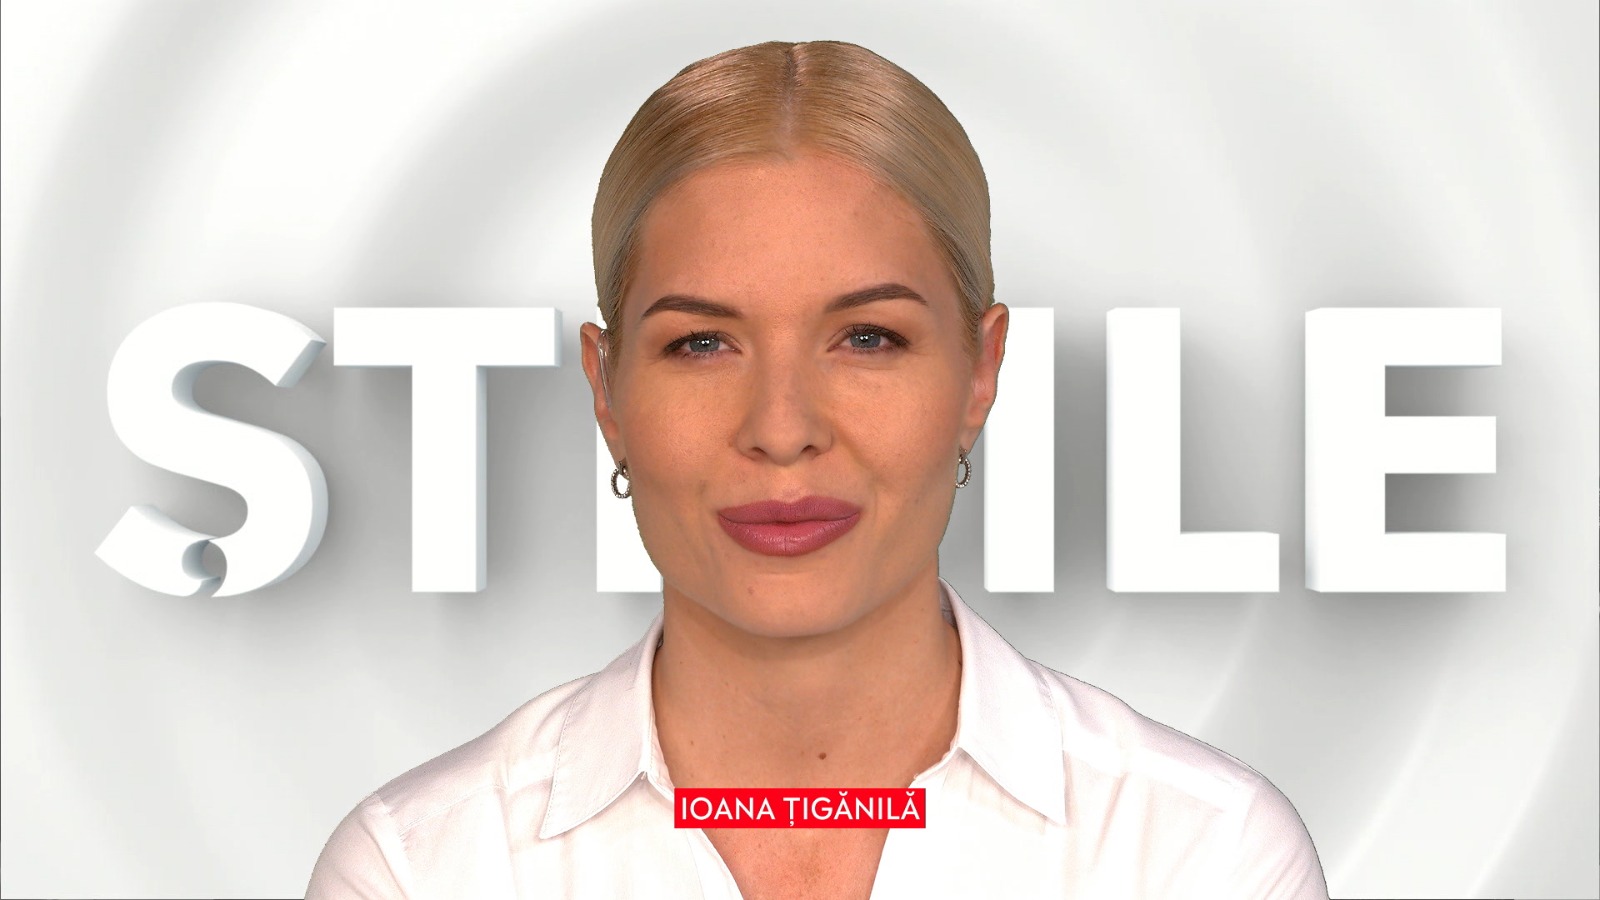 Știrile de la ora 22.00, prezentate de Ioana Țigănilă, 29 septembrie 2020